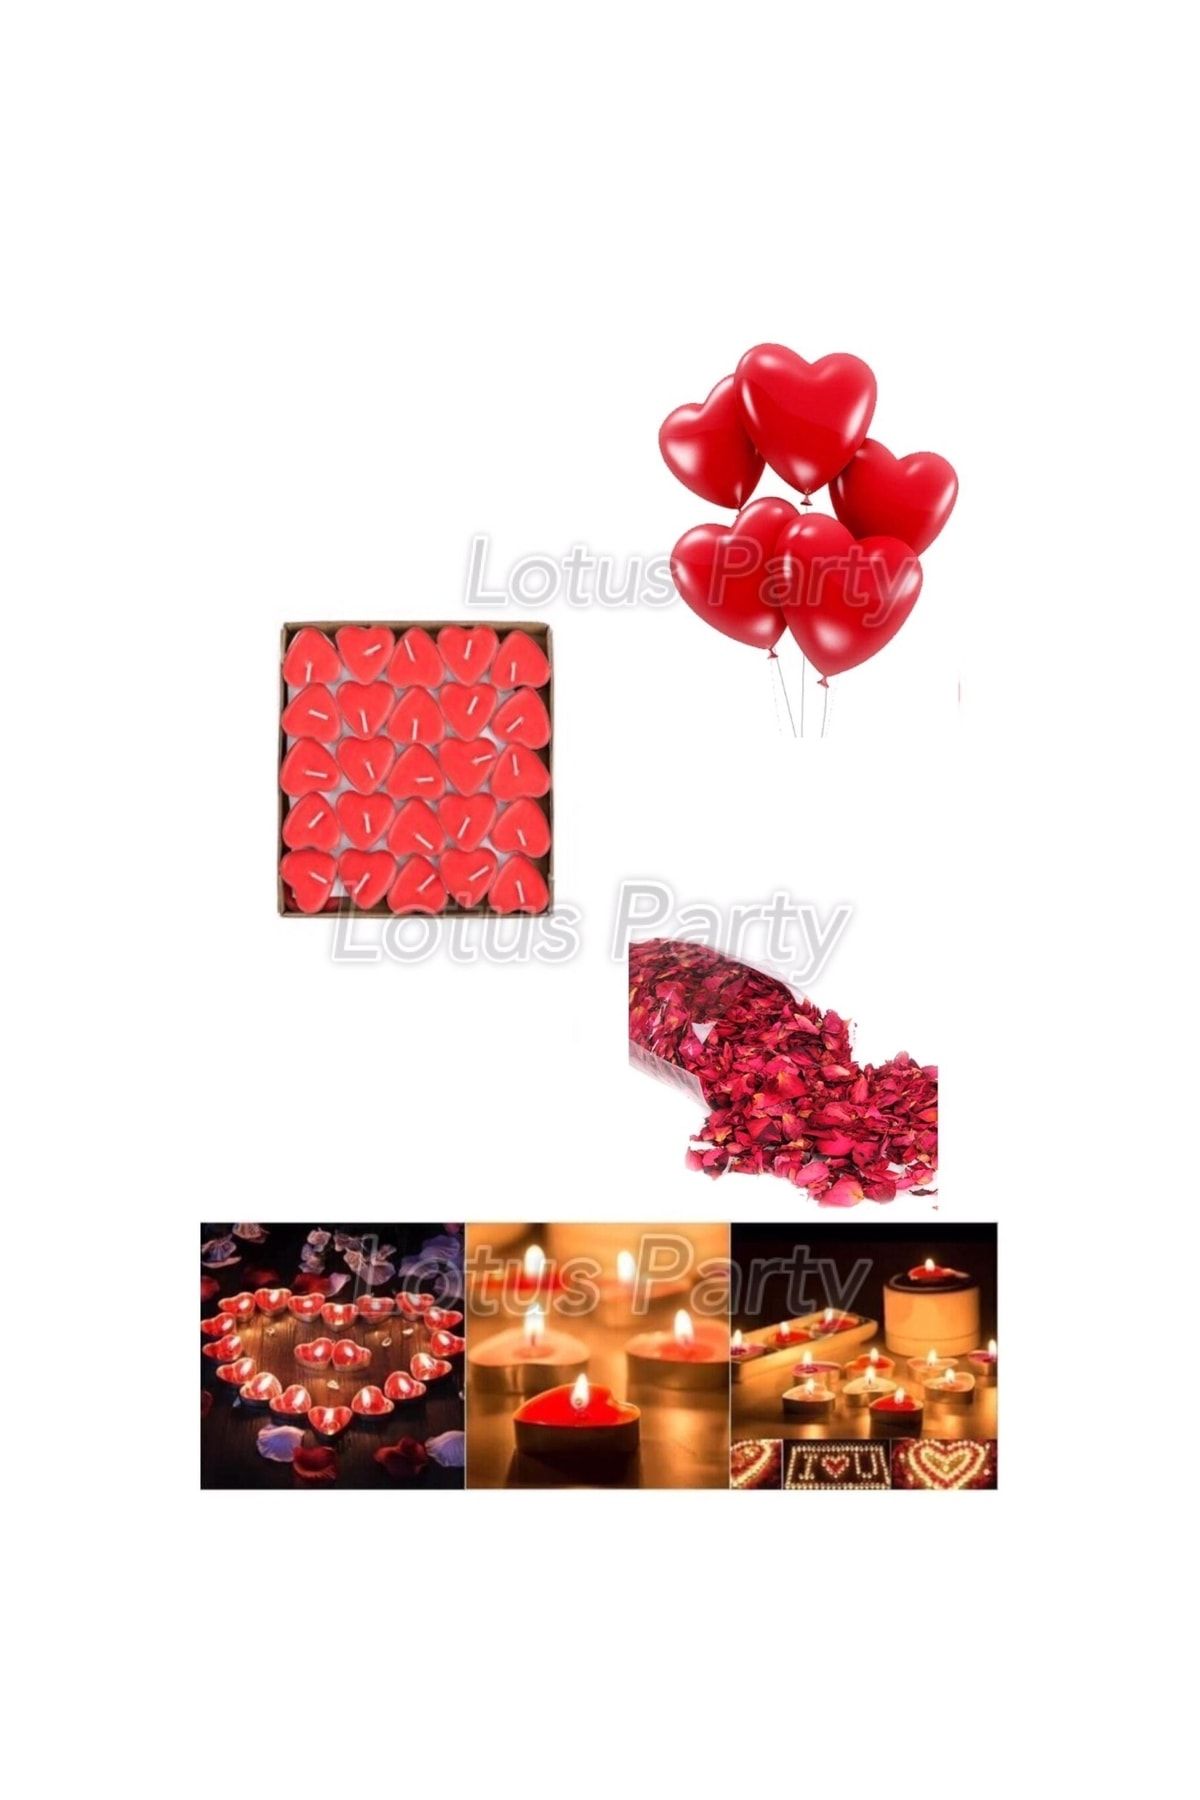 Lotus Party Evlilik Teklifi Sevgililer Günü Masa Süsleme 50 Adet Kırmızı Kalpli Tealight Mum 